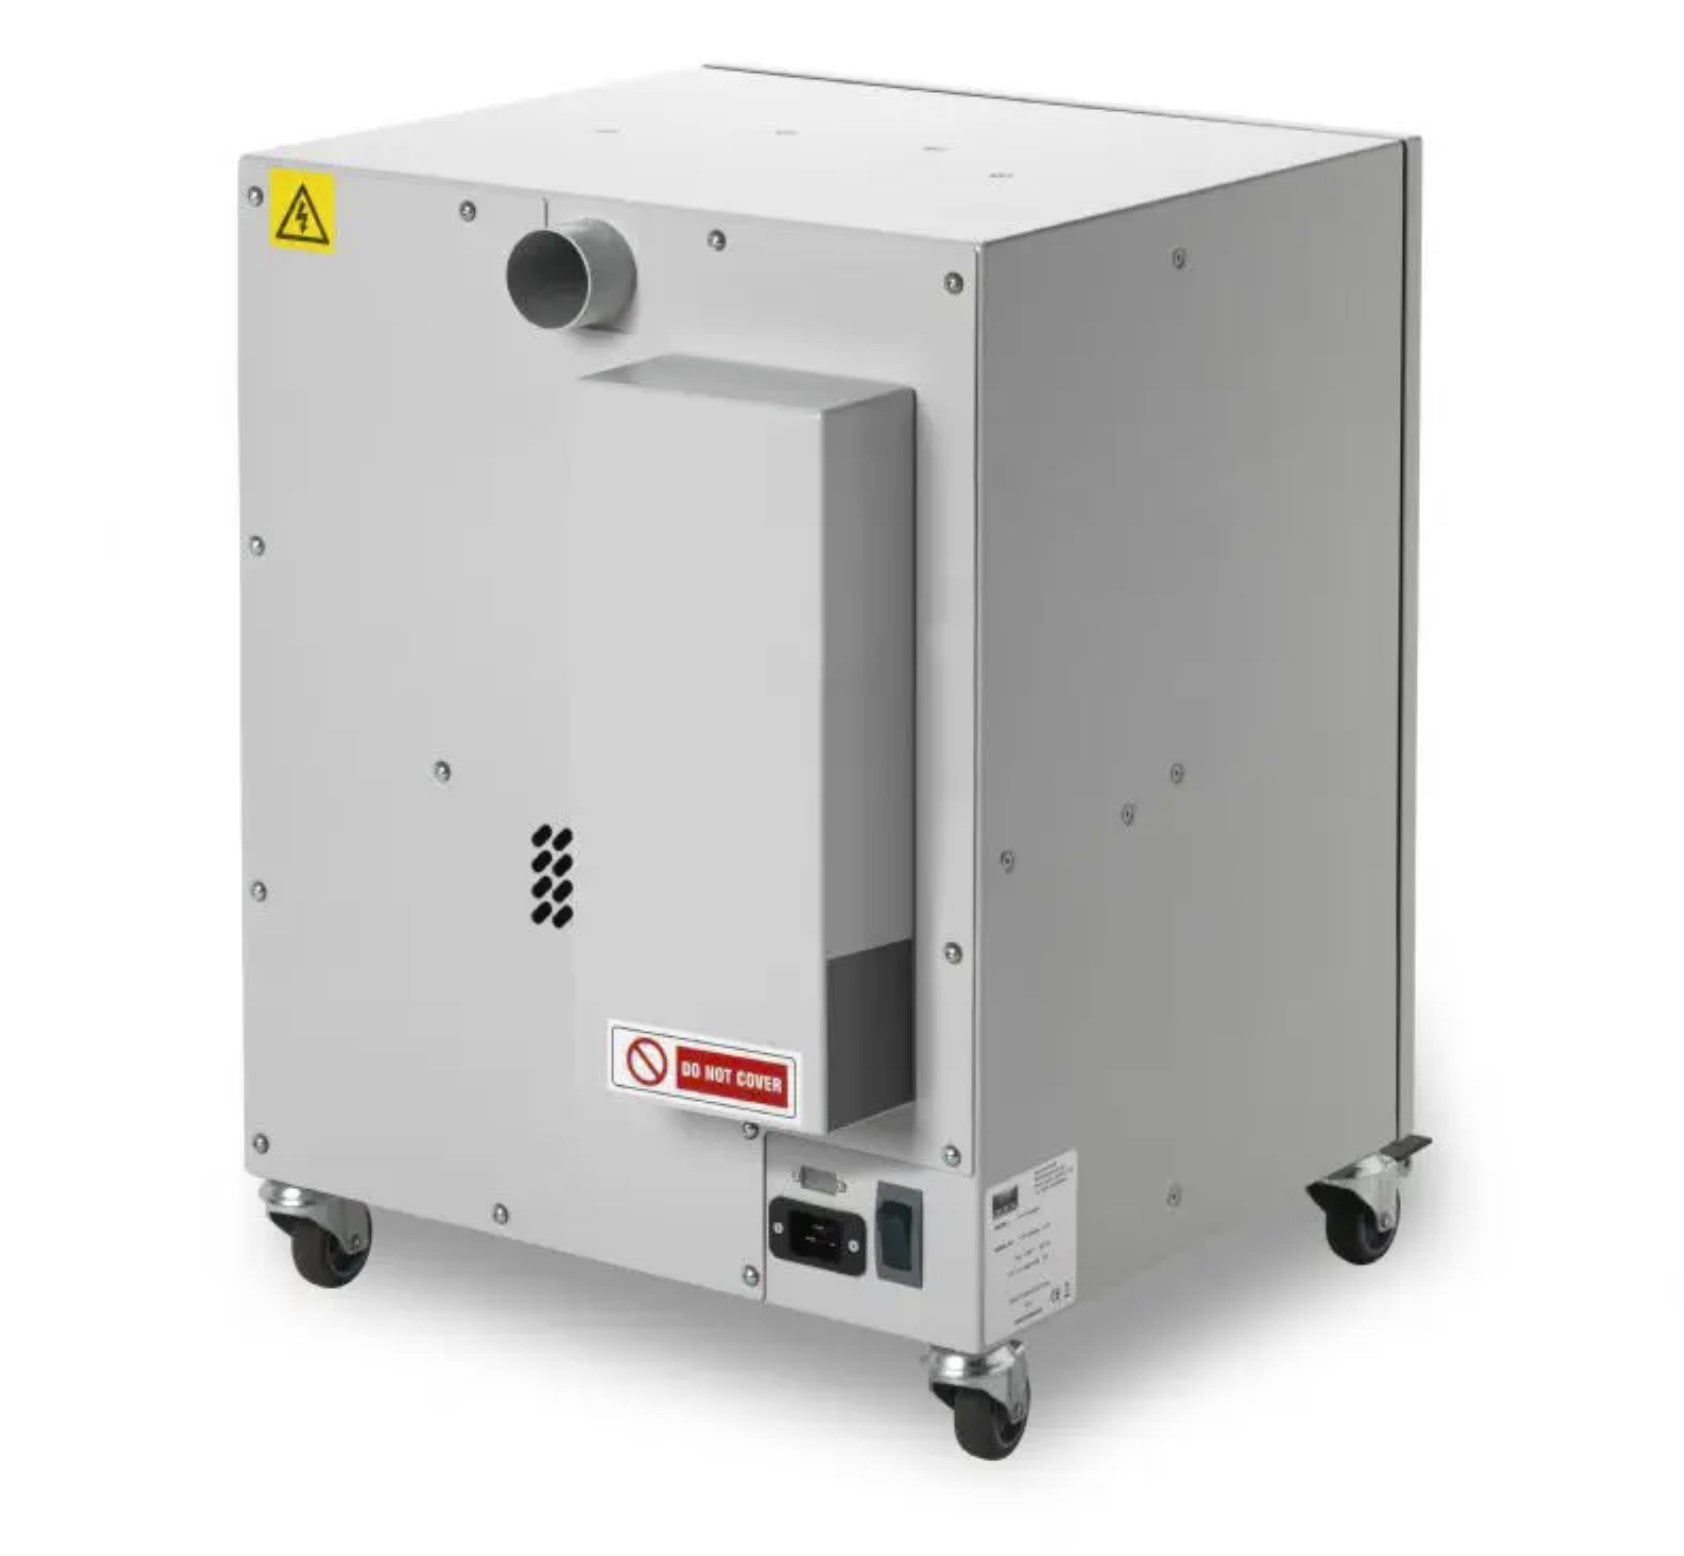 Filtres à air de haute qualité pour machines laser de BOFA